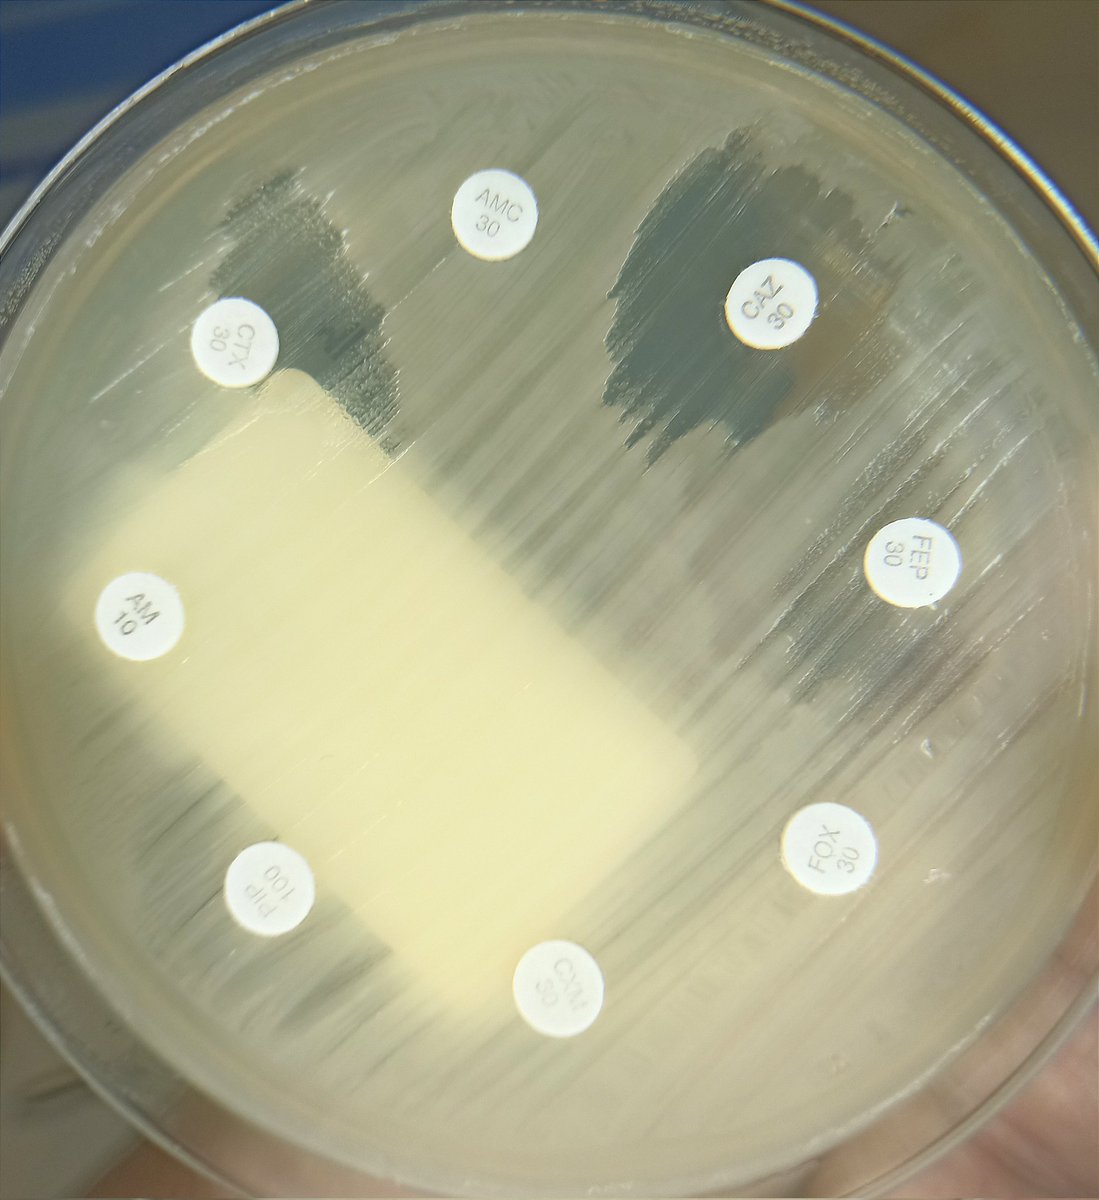 Fenotipo superpuesto en antibiograma de:

🦠 E. coli
🦠 Providencia stuartii

Tienes pistas para ver algo esperable, y algo menos esperable 👀

¿Qué ves?